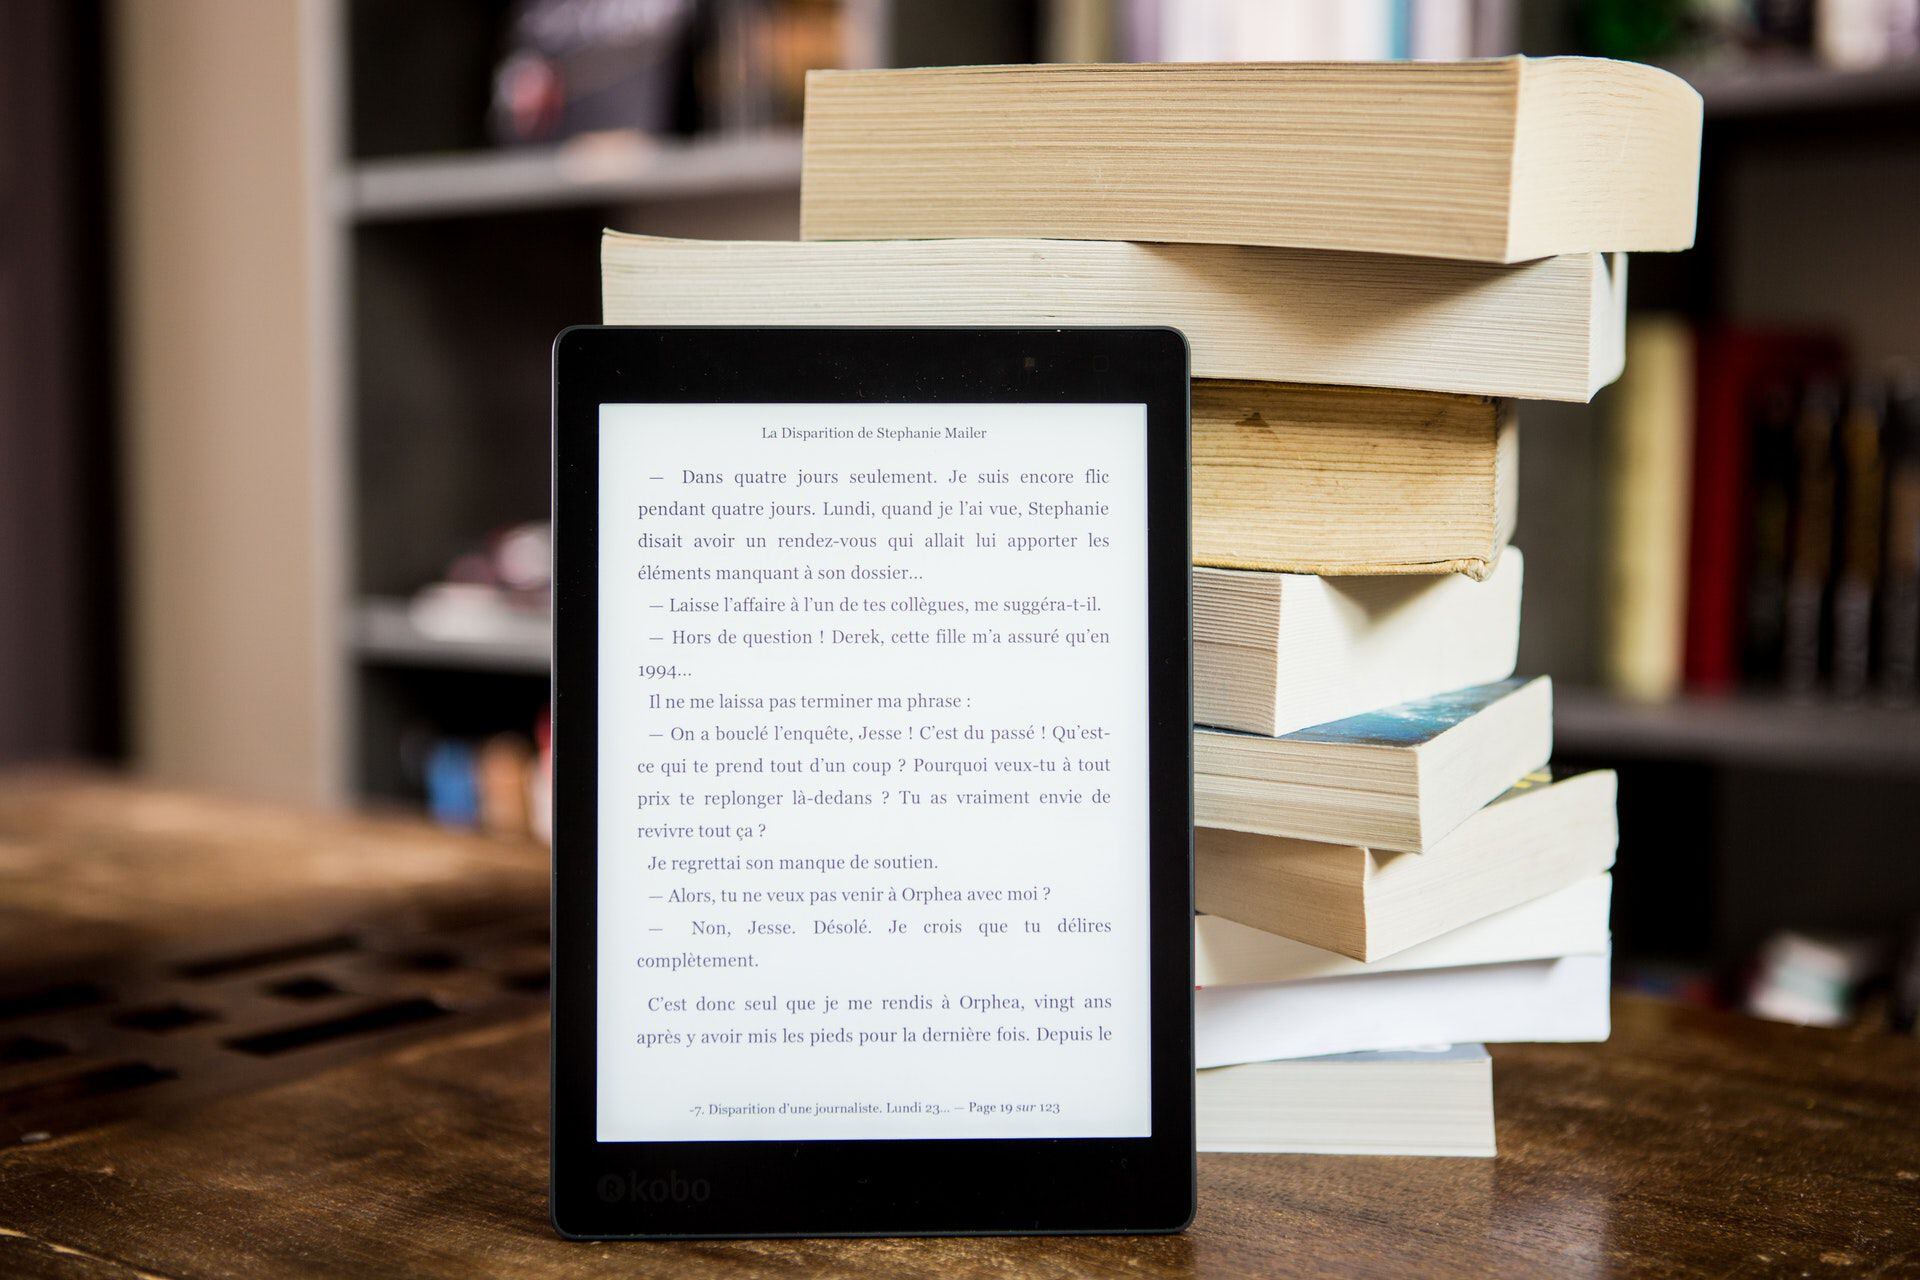 Kindle vs Kindle Paperwhite: ¿Cuál es mejor y en qué se diferencian?